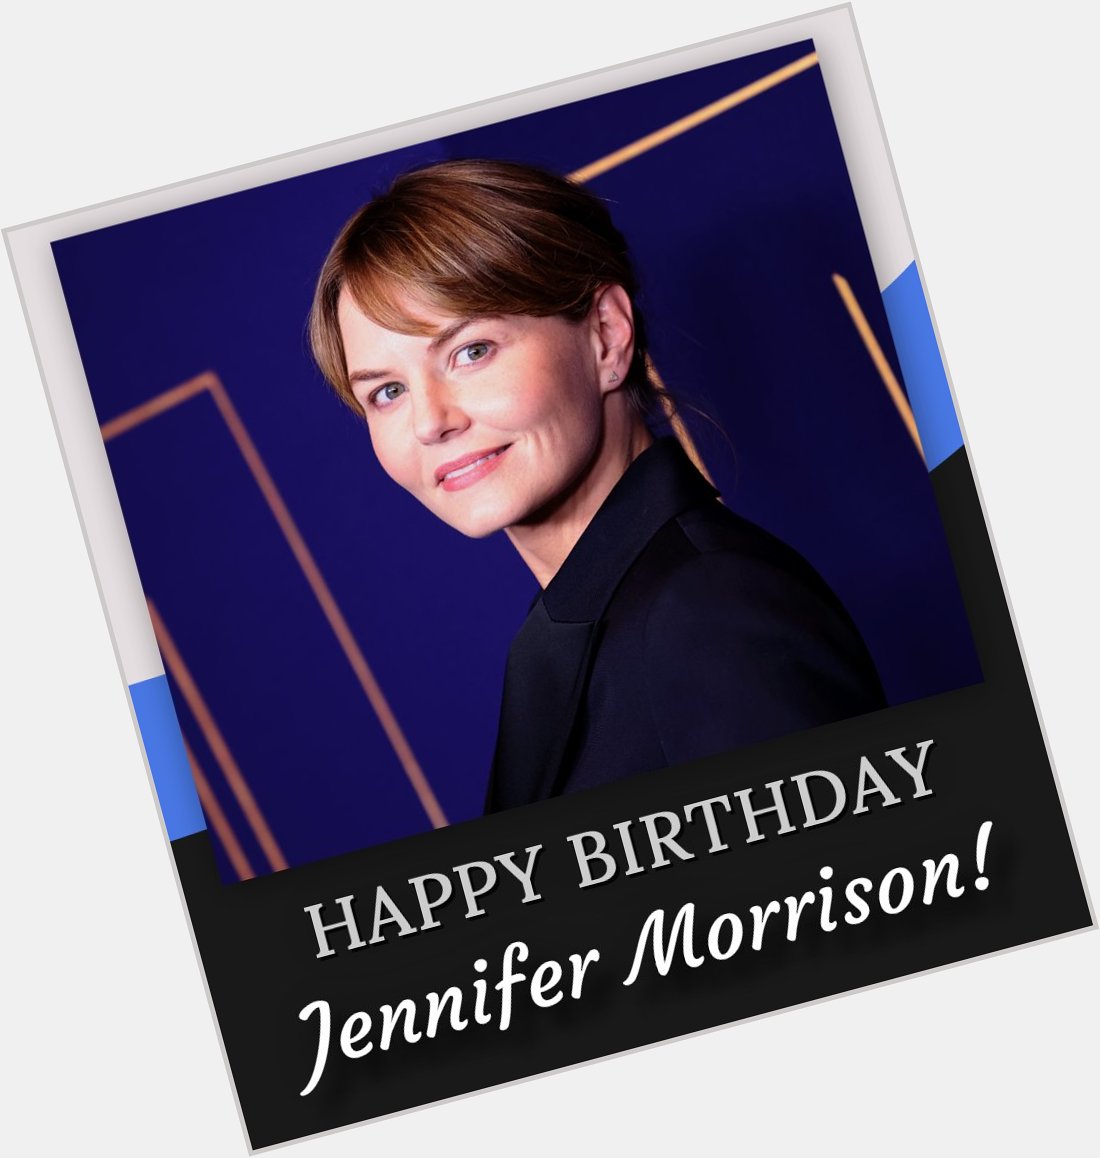 Happy birthday, Jennifer Morrison! 